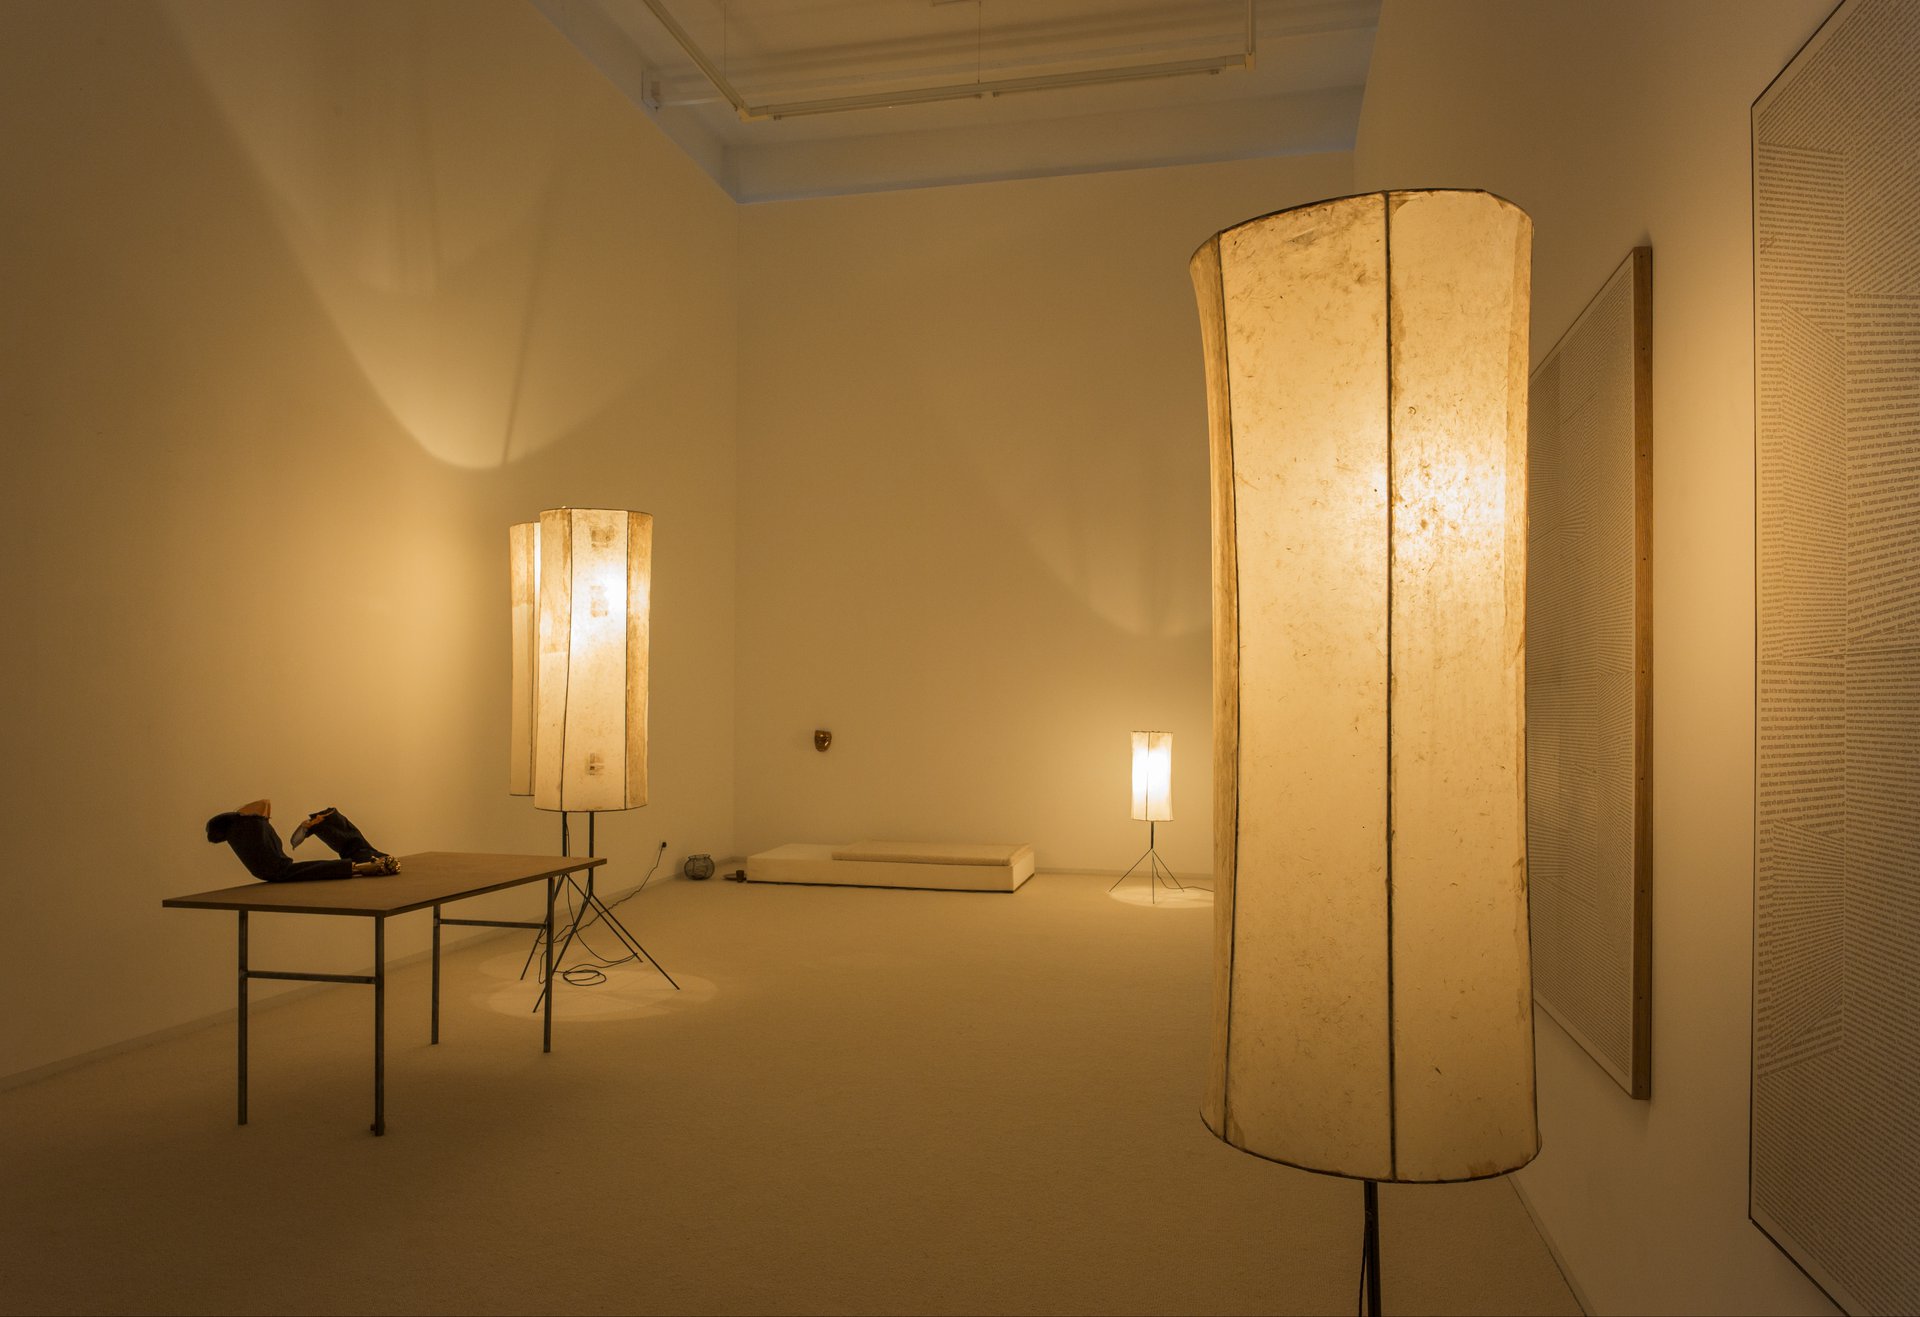 Robert Brambora, Installationsansicht, 2019, Bonner Kunstverein, Courtesy der Künstler. Foto: Martin Plüddemann